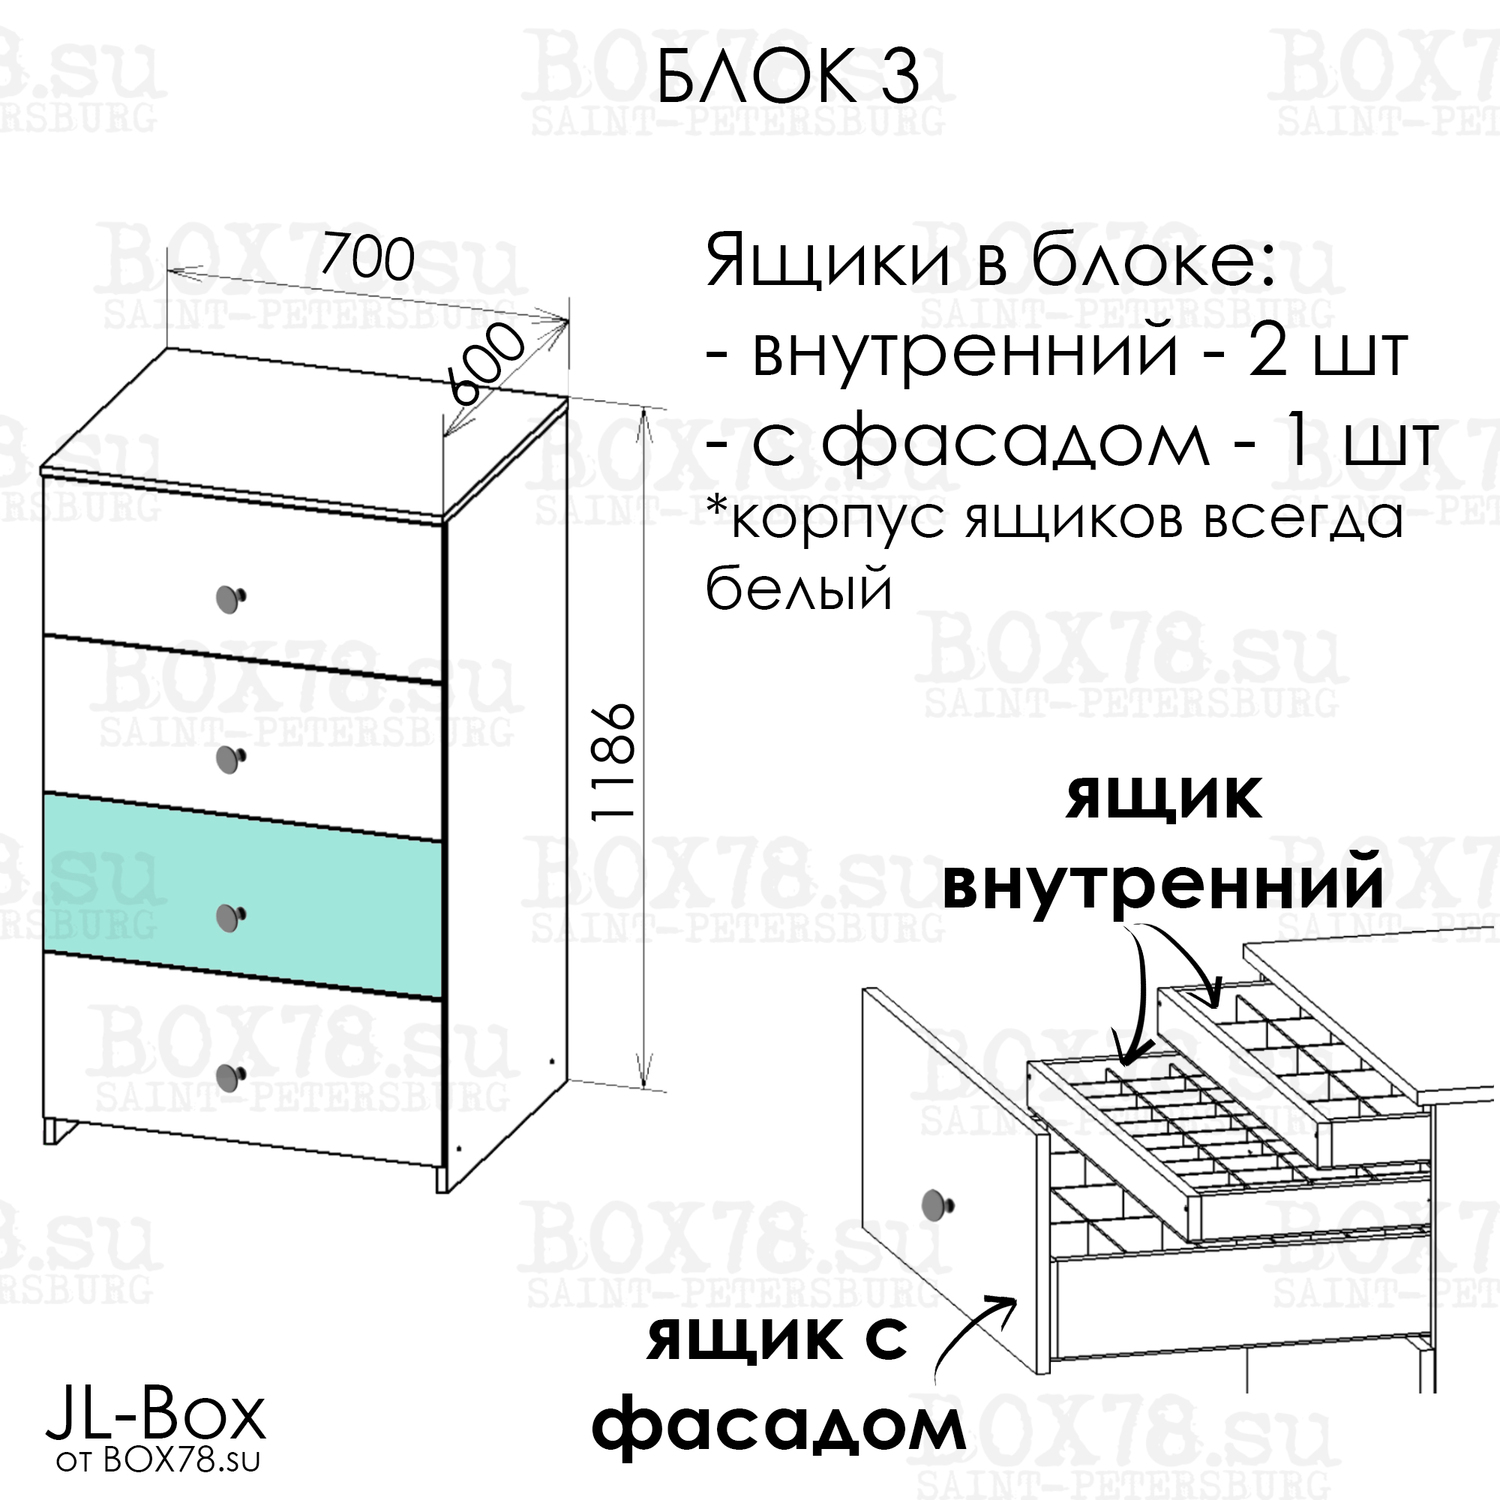 JL-Box. Блок 3